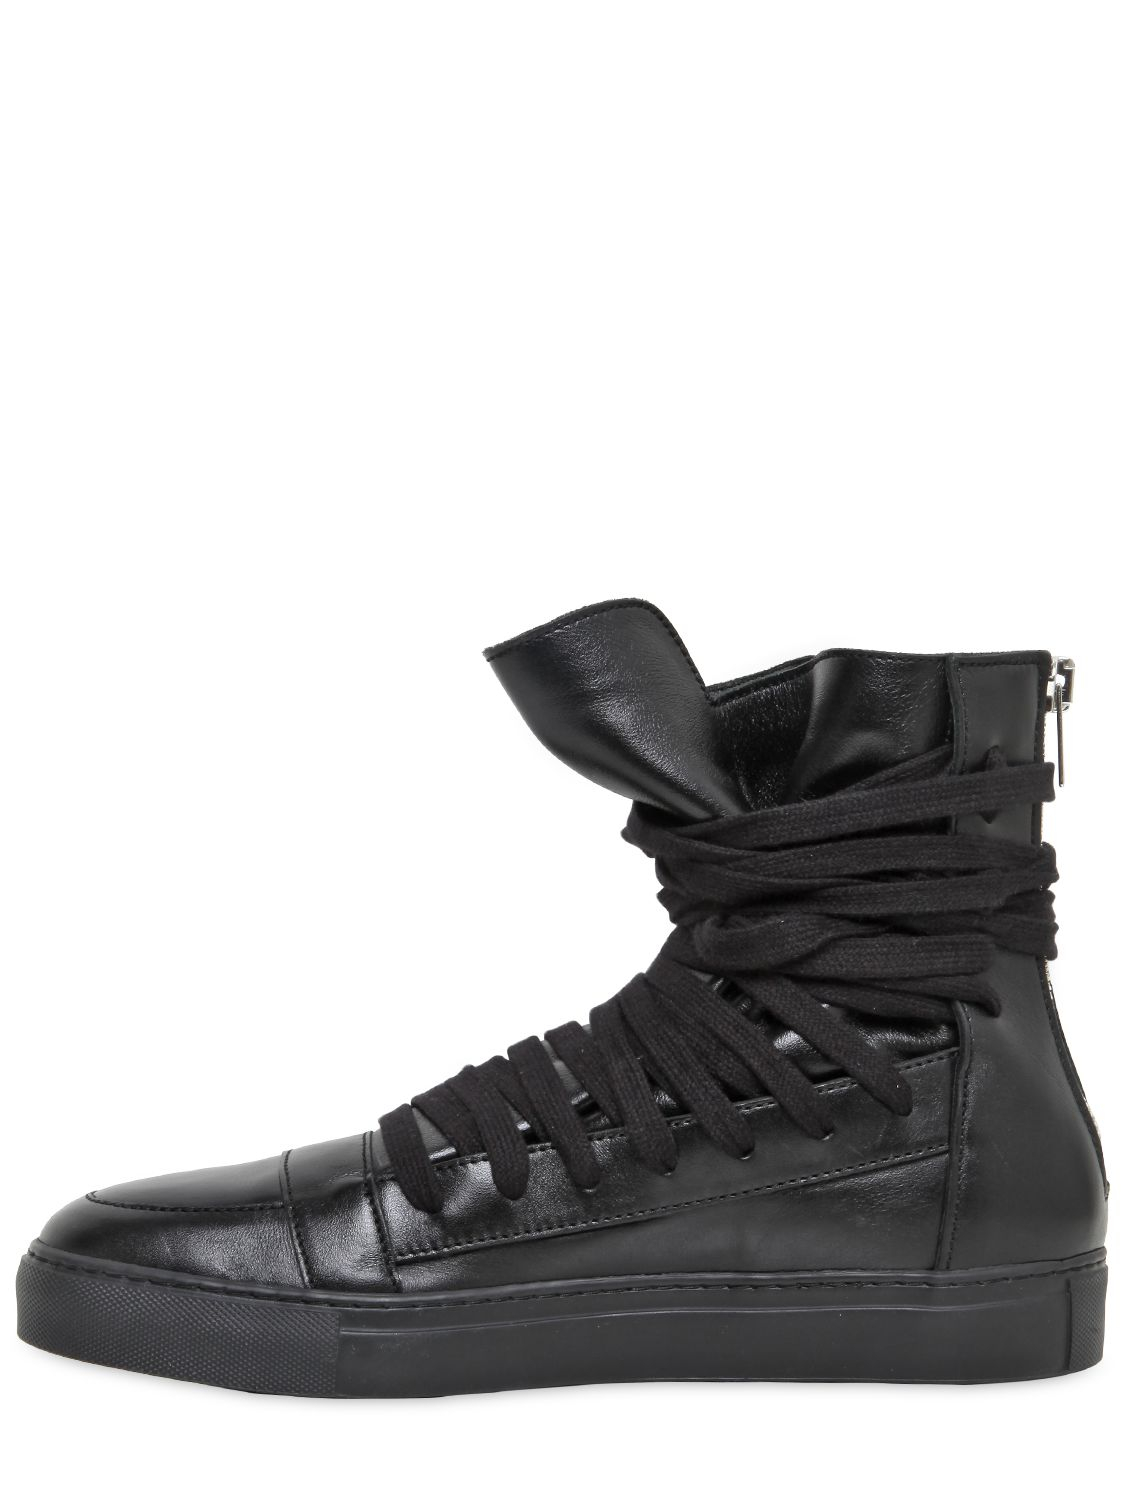 Lyst - Kris Van Assche Leather High Top Sneakers in Black for Men